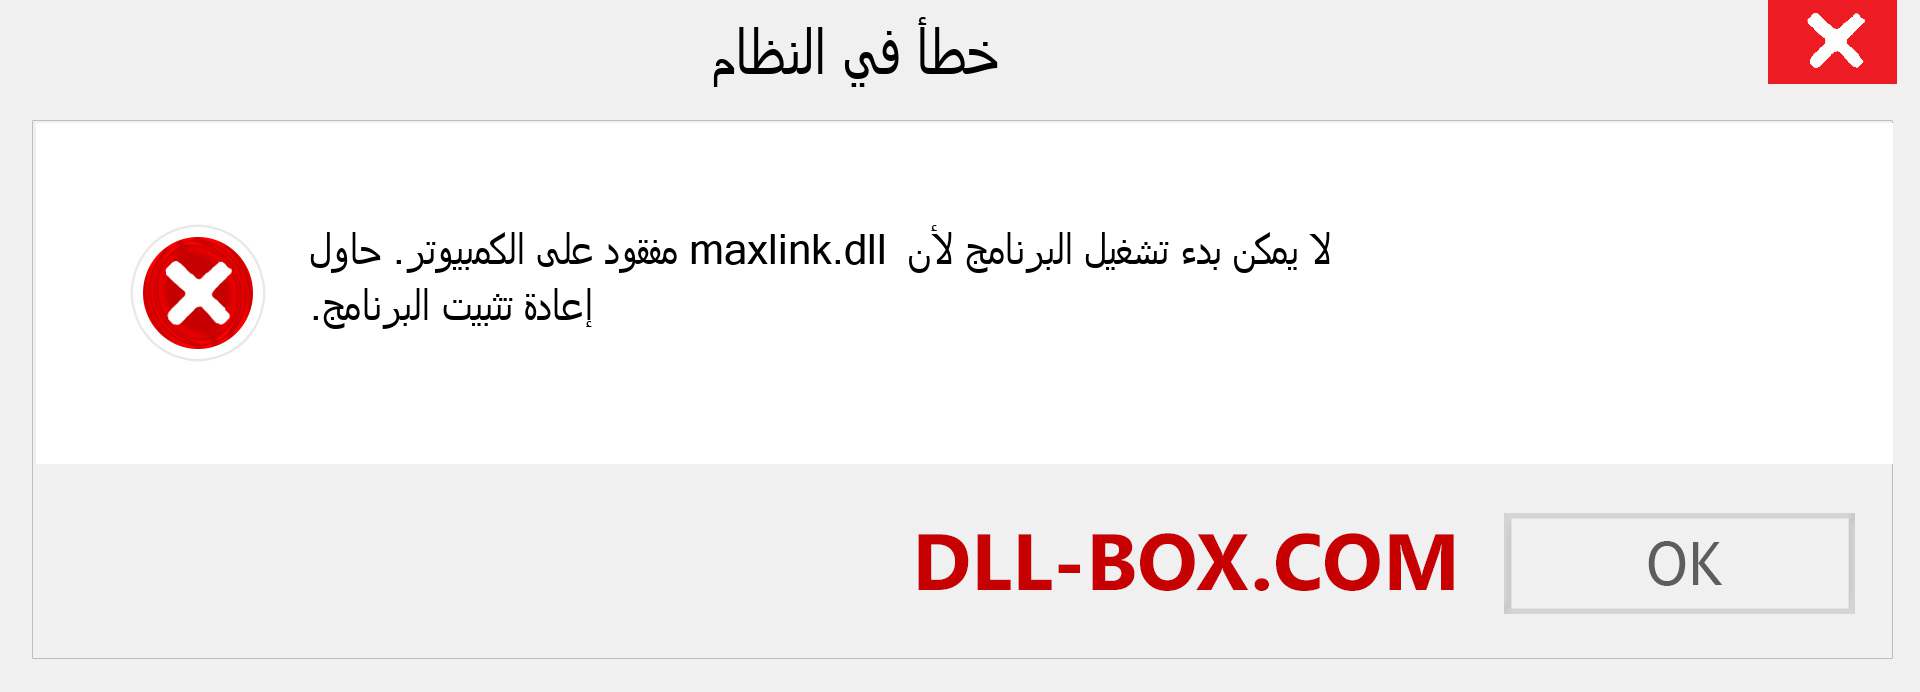 ملف maxlink.dll مفقود ؟. التنزيل لنظام التشغيل Windows 7 و 8 و 10 - إصلاح خطأ maxlink dll المفقود على Windows والصور والصور